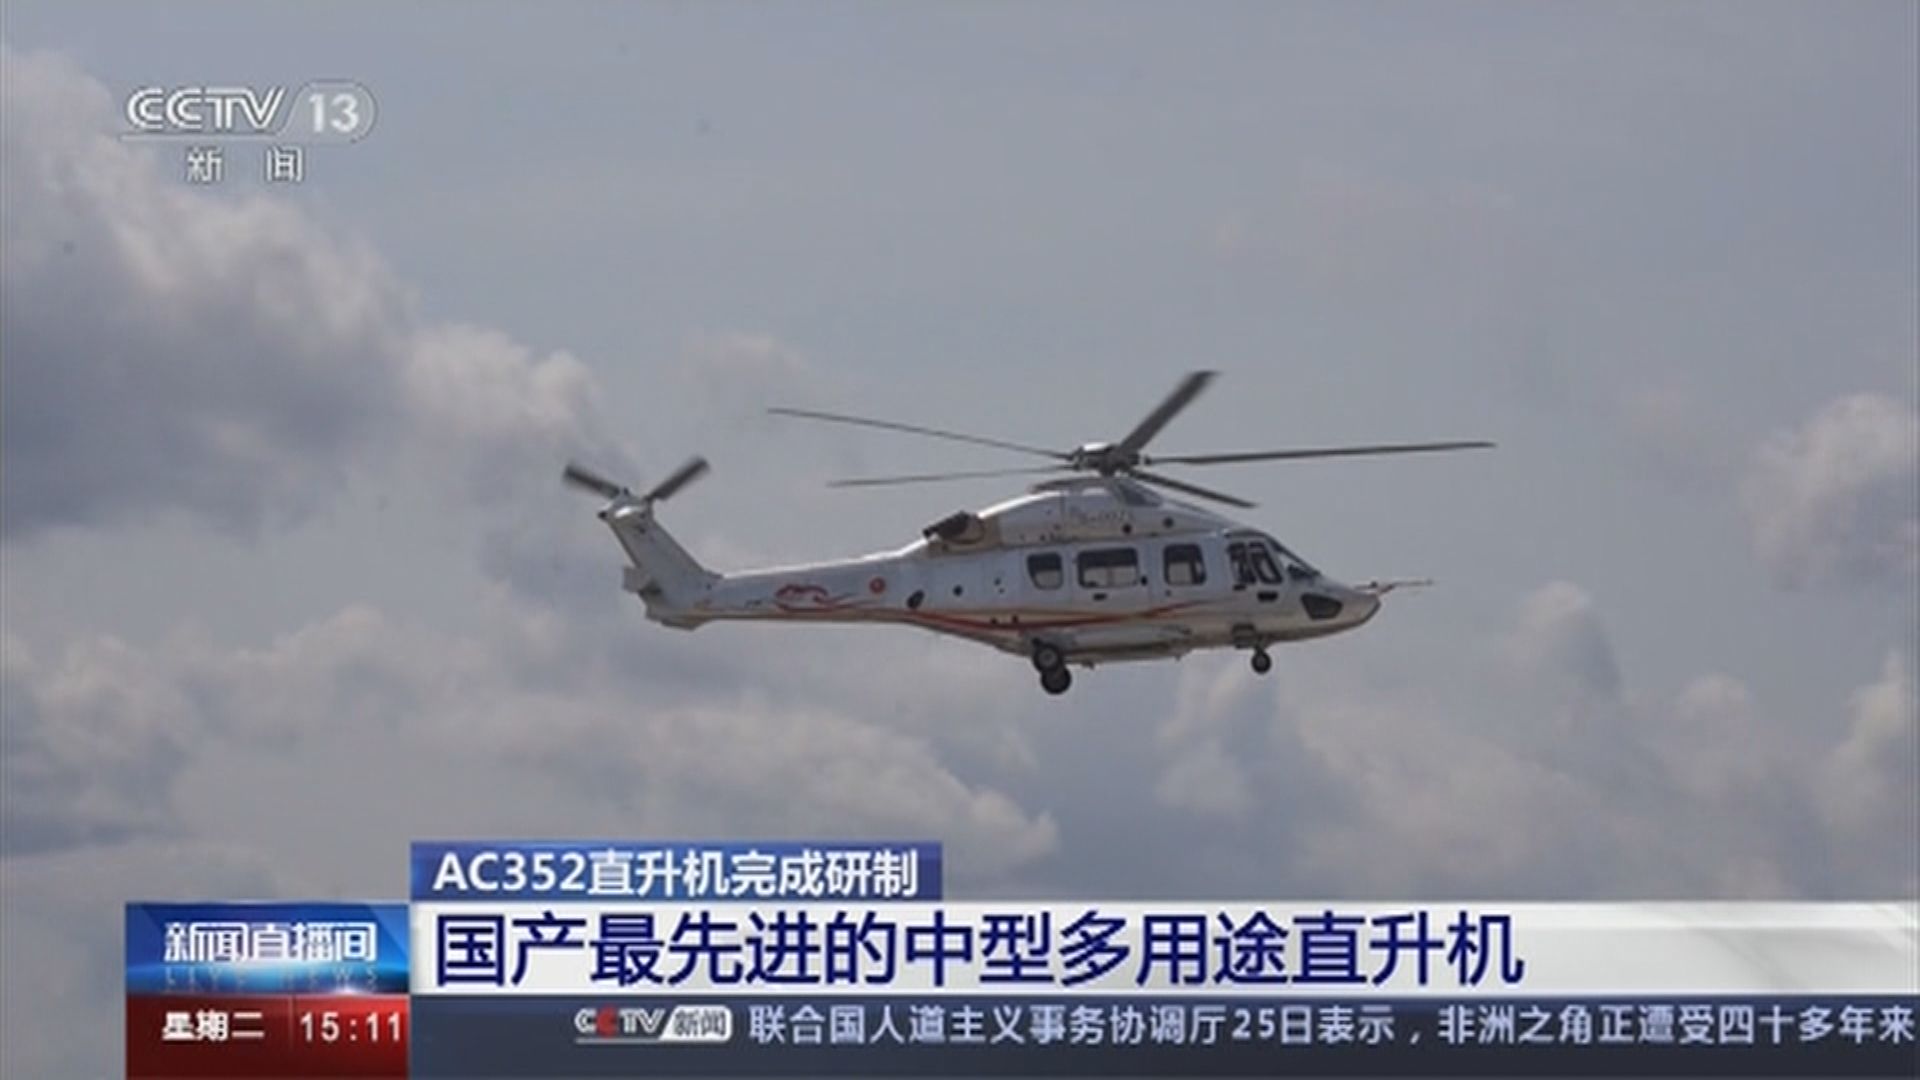 AC352直升機獲中國民航局頒發合格證